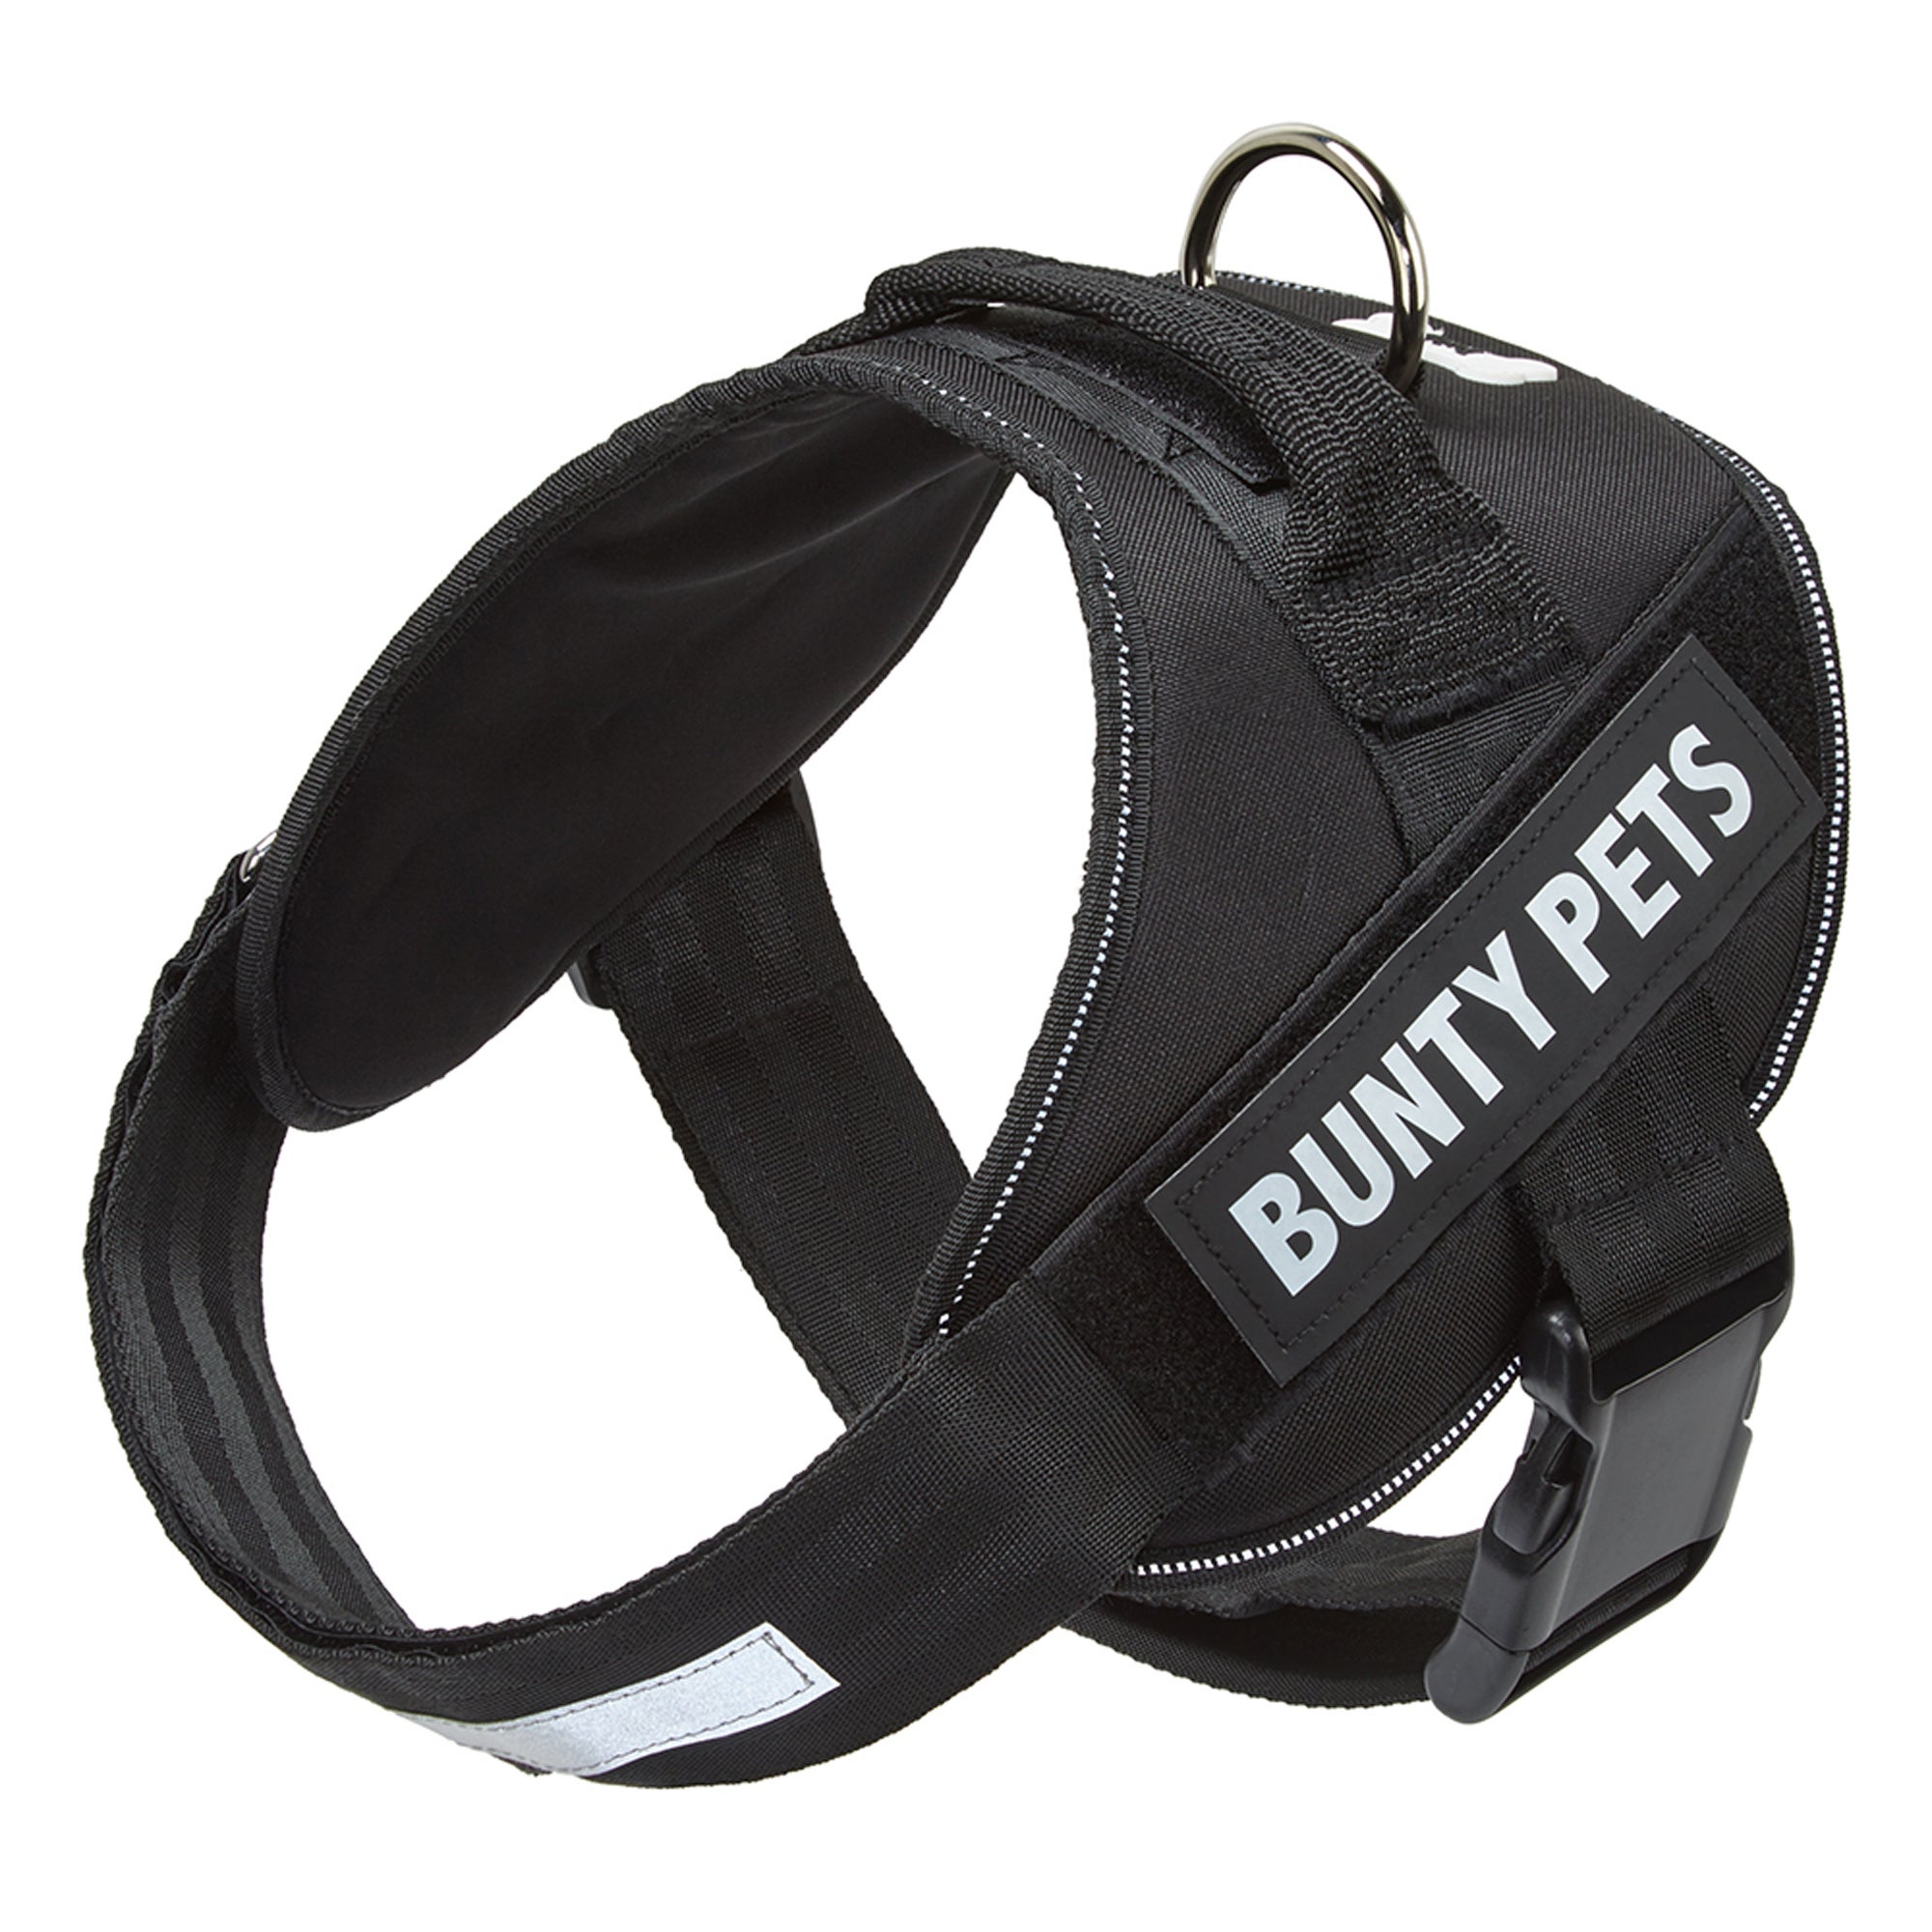 Bunty Black Yukon Dog Harness Black